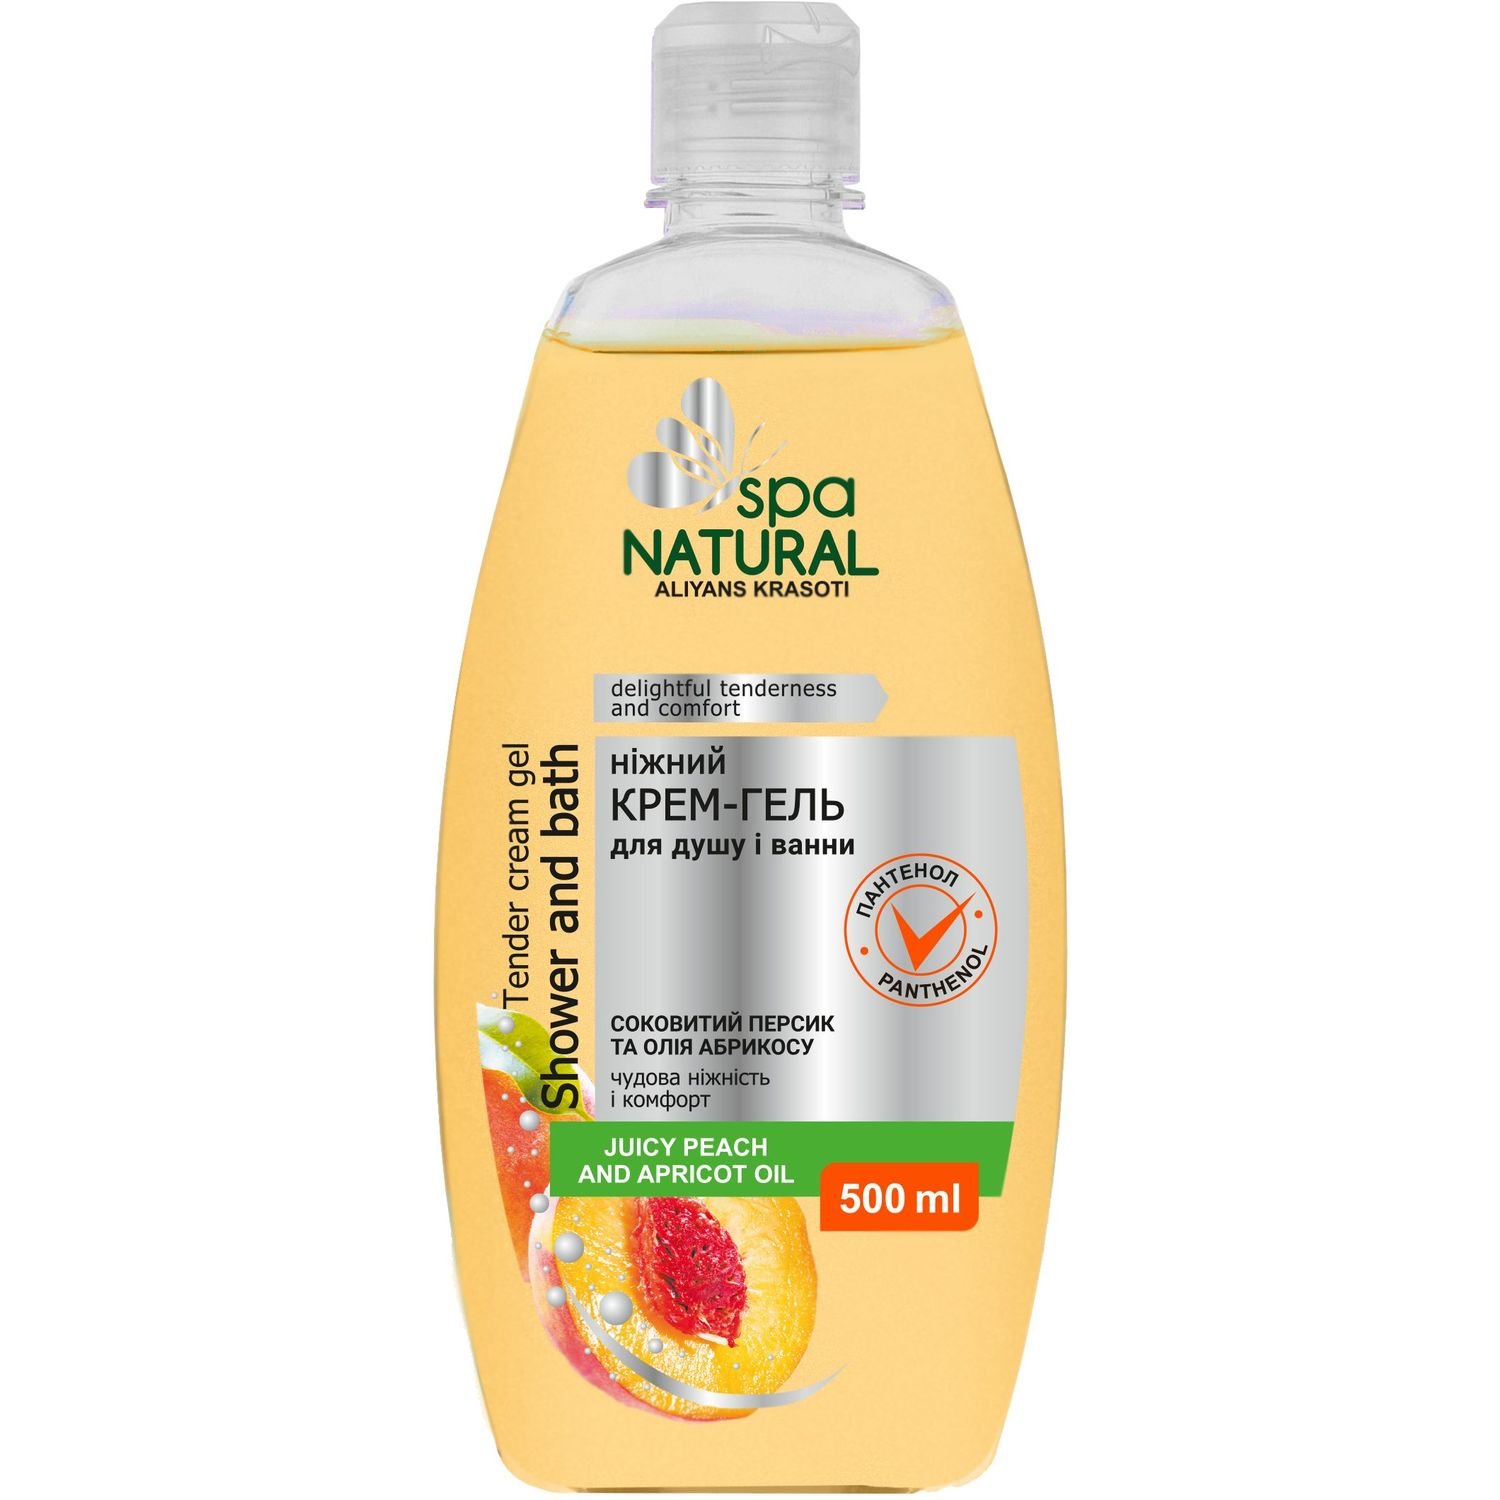 Крем-гель для душа и ванны Natural Spa Спелый персик и масло абрикоса, 500 мл - фото 1